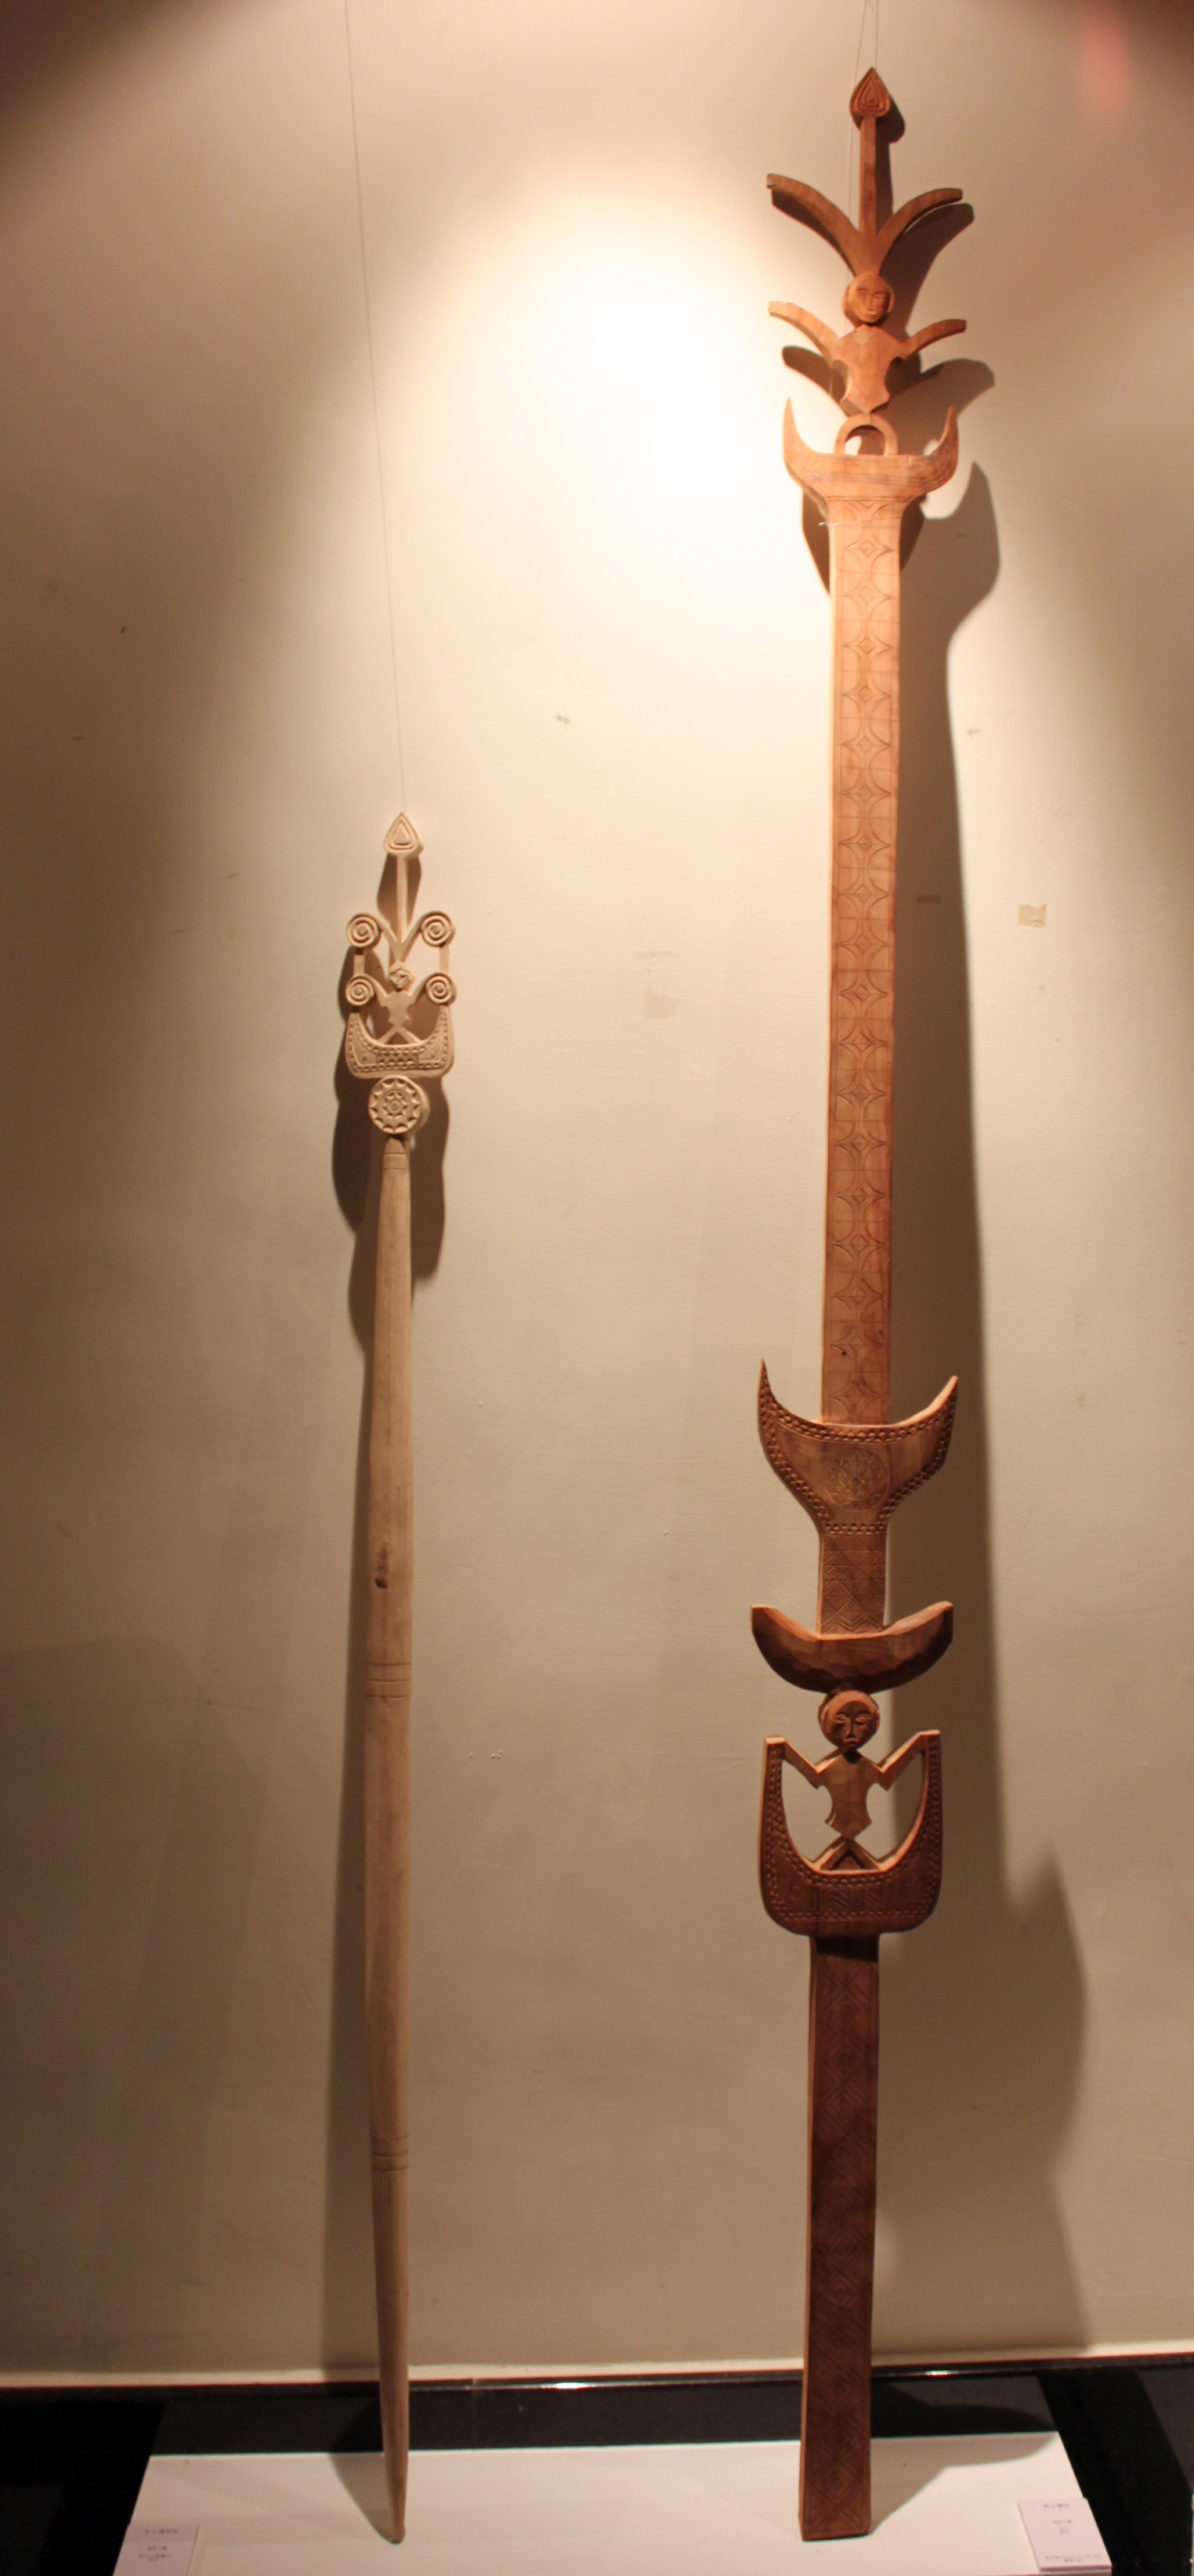 權杖/荷蘭國王登基/台灣原住民部落頭目擁有象徵統治權力的權杖